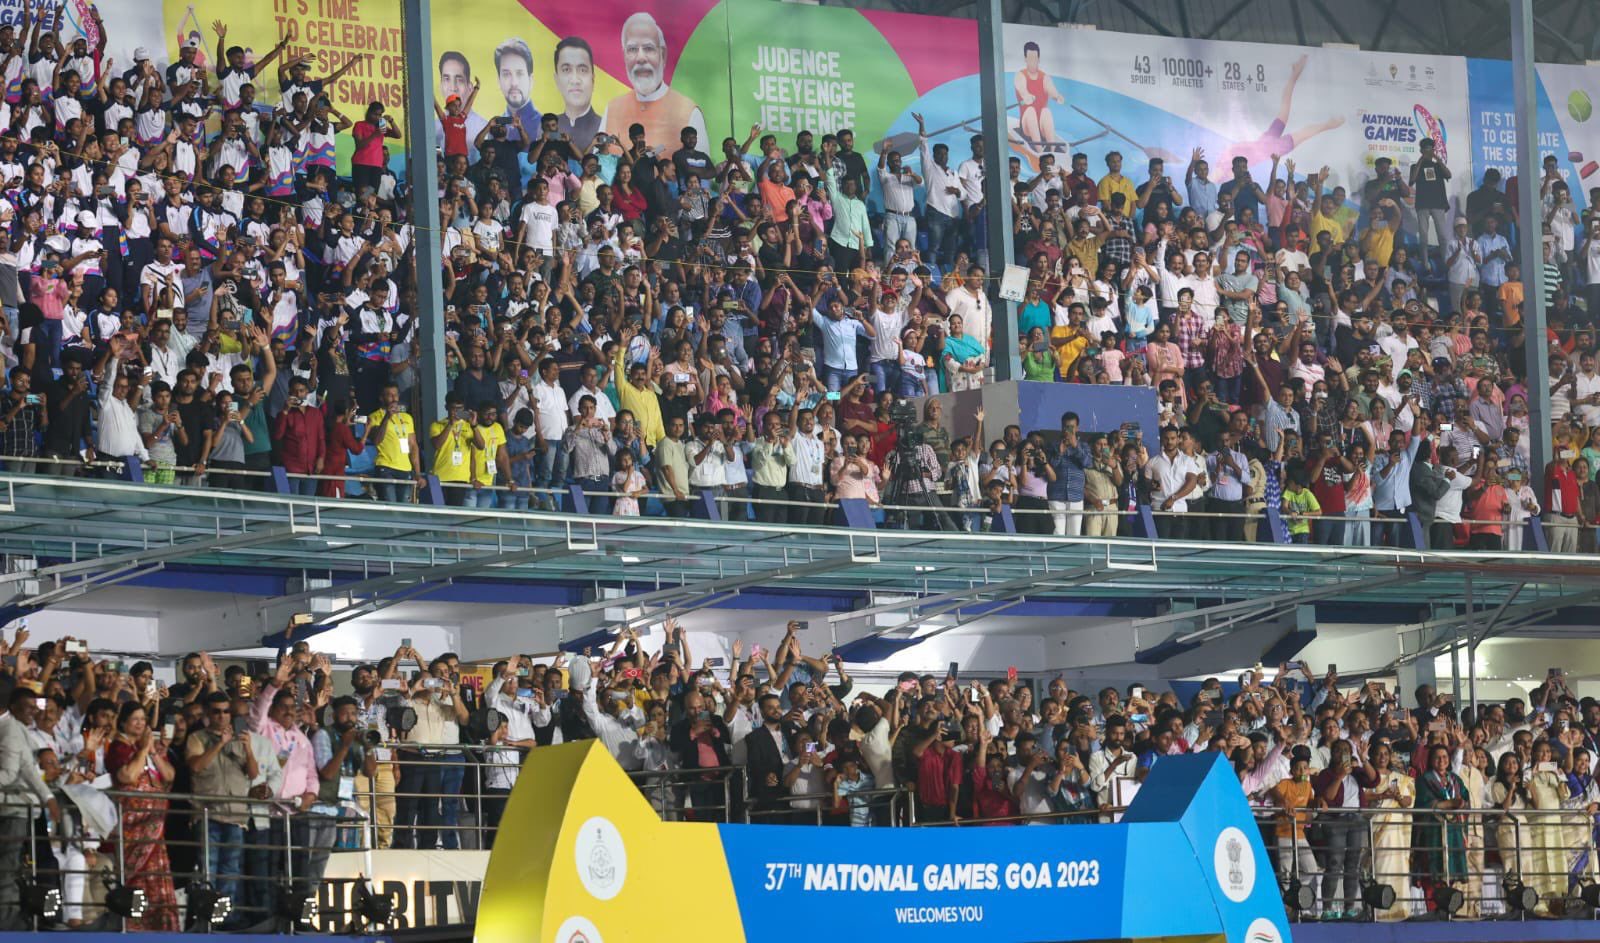 प्रधानमंत्री मोदी ने गोवा के पणजी में राष्ट्रीय खेल के 37वें संस्करण का किया उद्घाटन